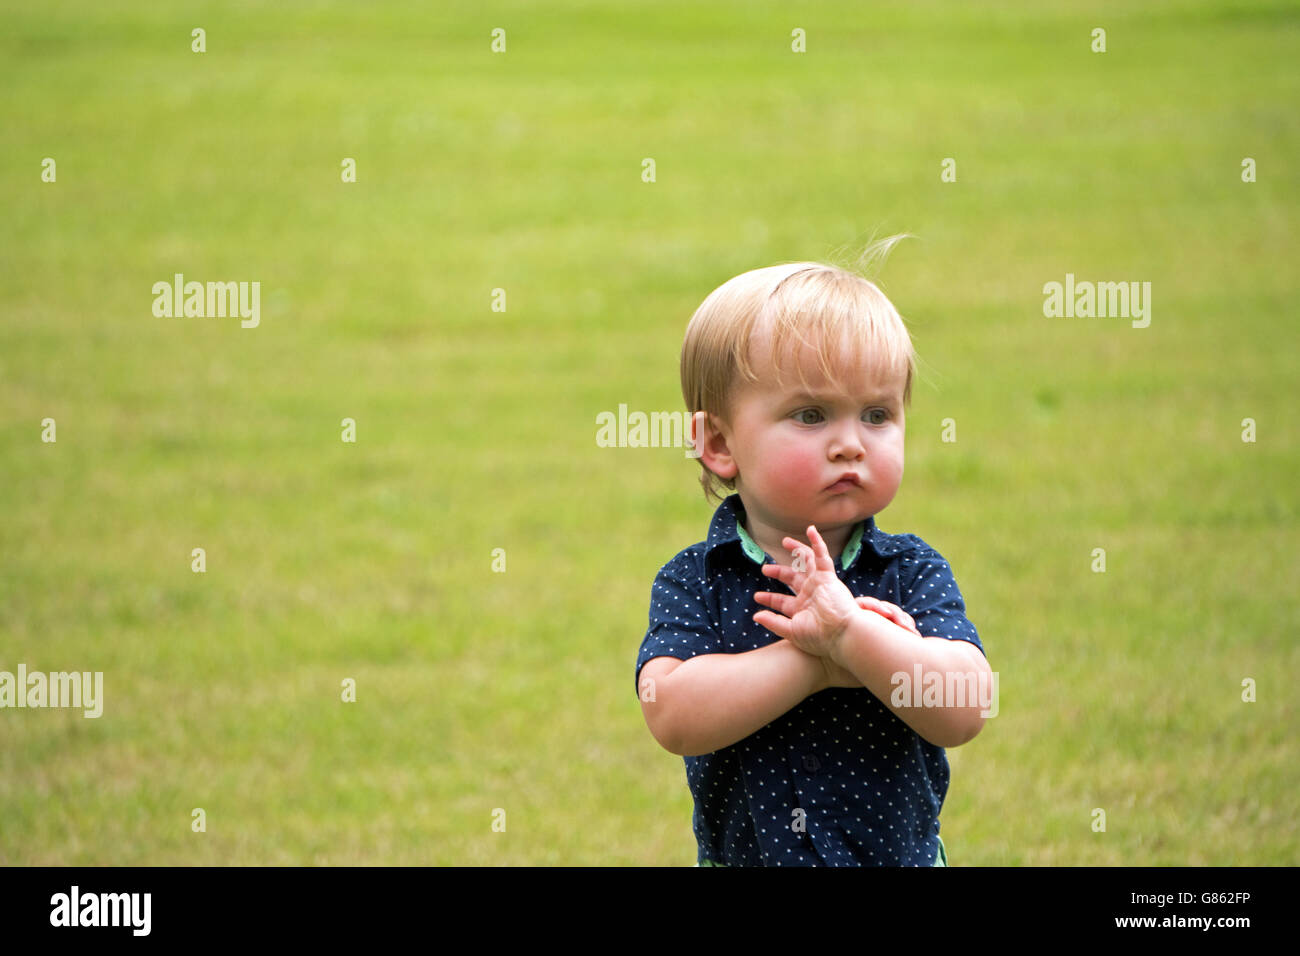 Little boy in a field Stock Photo